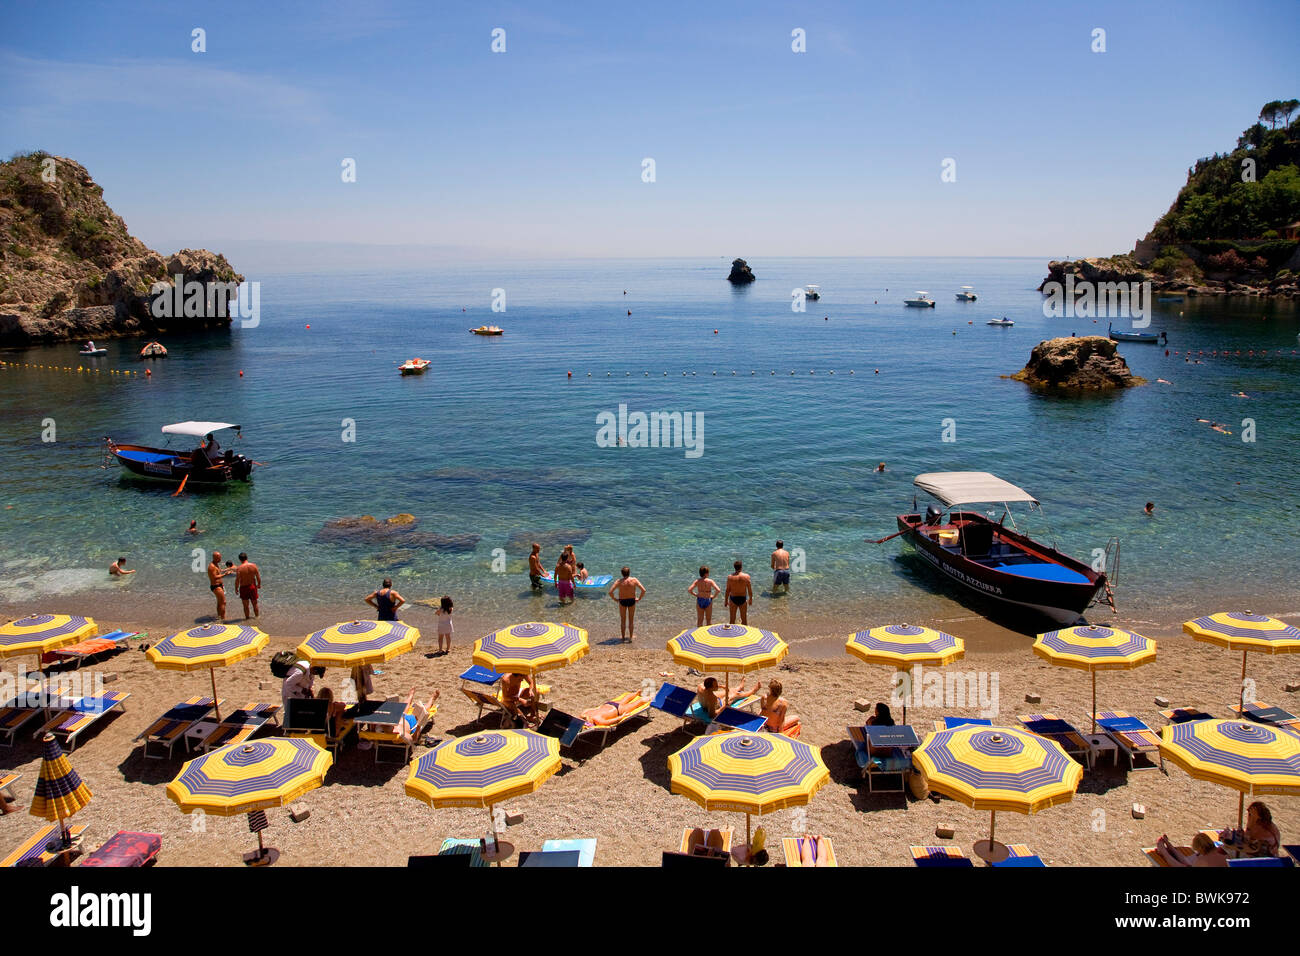 Mazzaro bay, Taormina, Messina province, Sicily, Italy, Europe Stock Photo